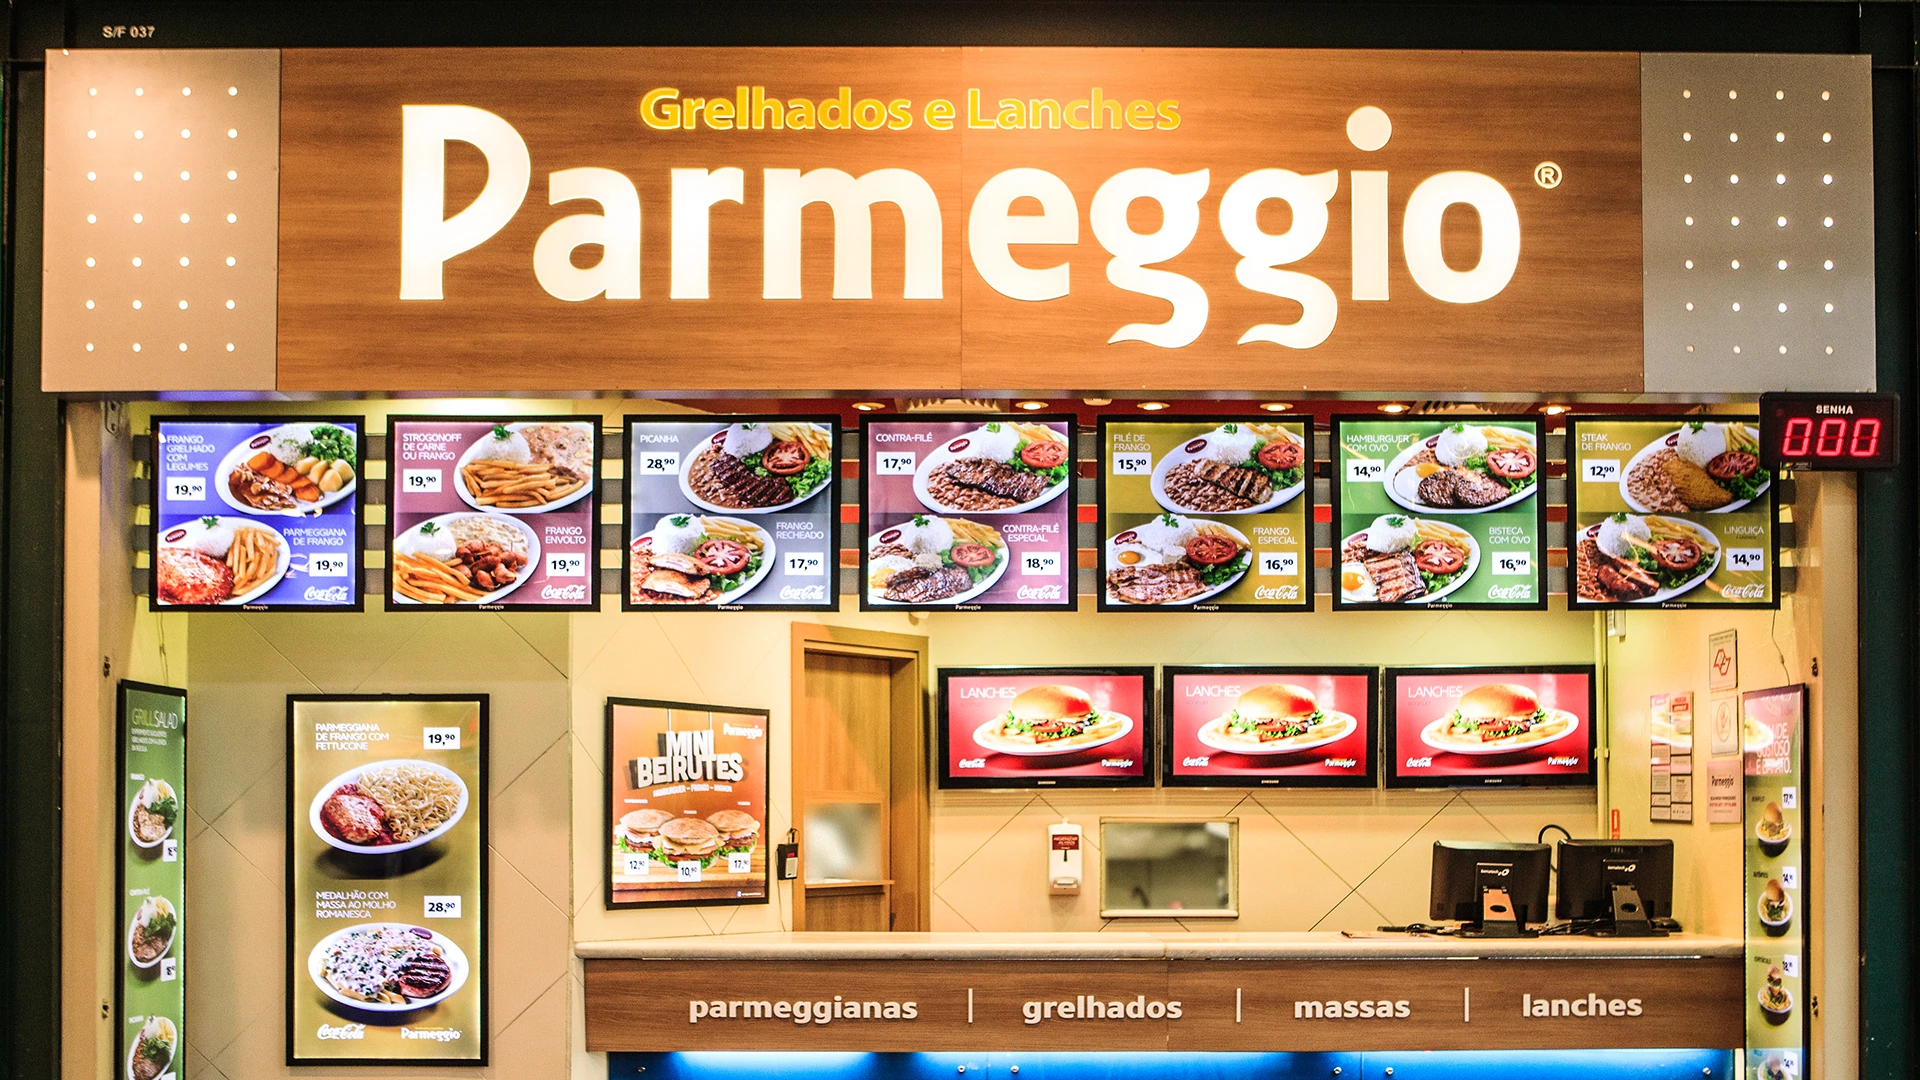 paralax-parmeggio-home-lanches-e-grelhados-1696512232948.png